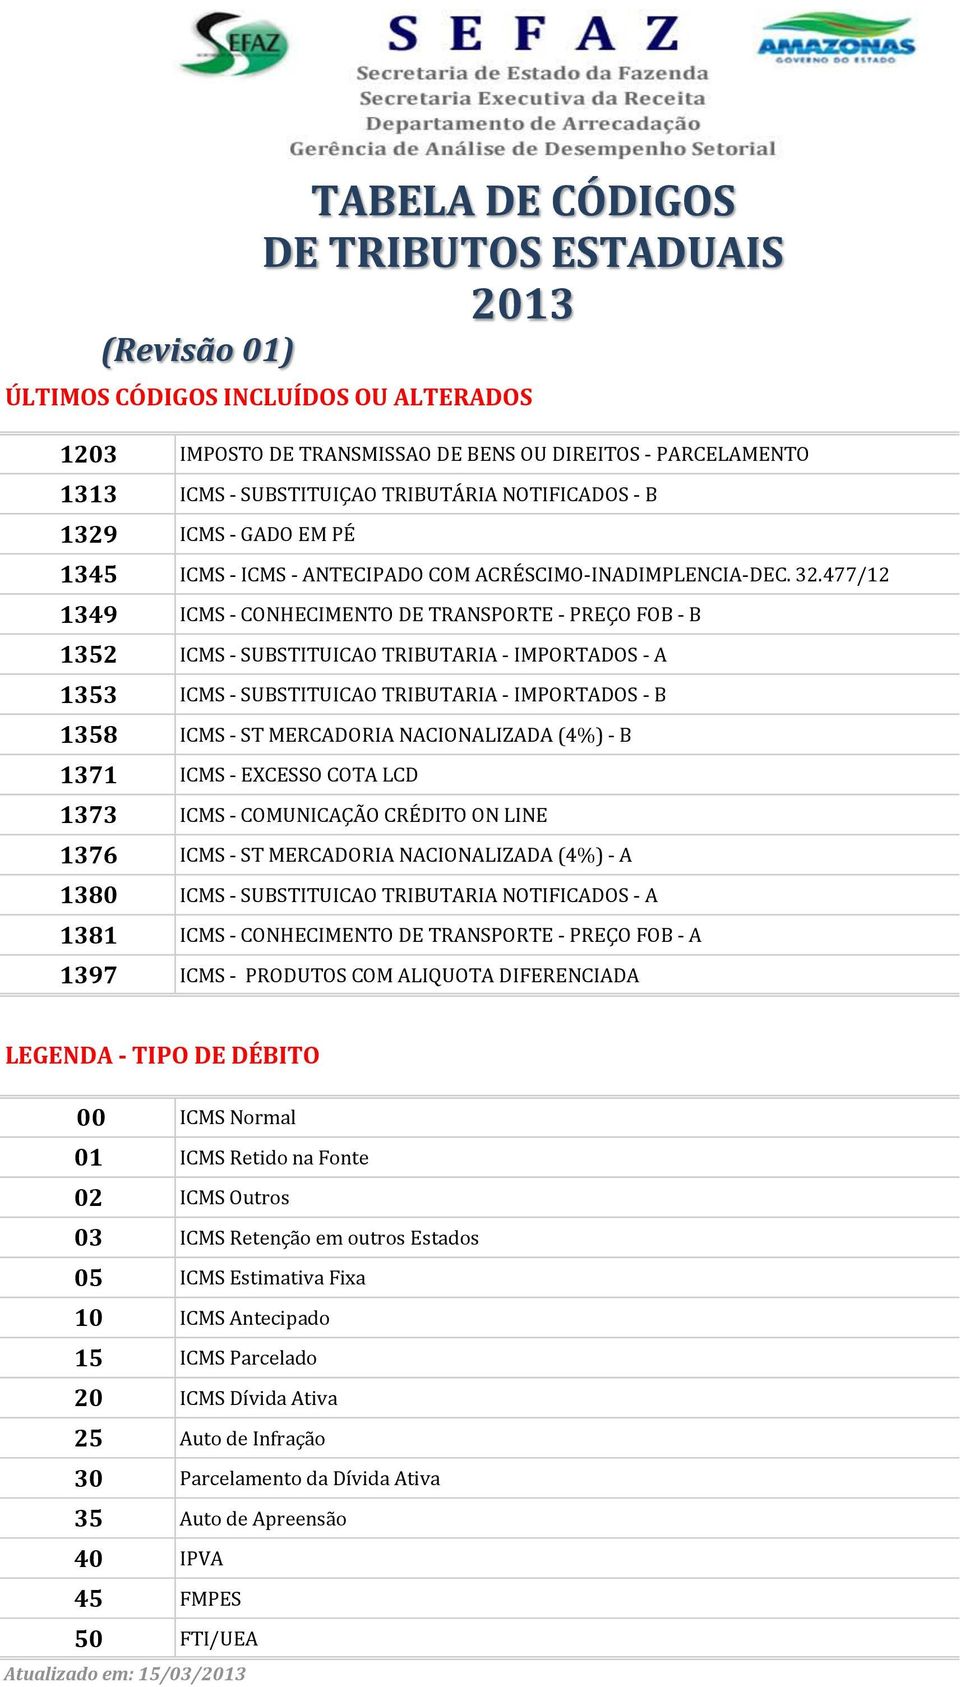 477/12 1349 ICMS - CONHECIMENTO DE TRANSPORTE - PREÇO FOB - B 1352 ICMS - SUBSTITUICAO TRIBUTARIA - IMPORTADOS - A 1353 ICMS - SUBSTITUICAO TRIBUTARIA - IMPORTADOS - B 1358 ICMS - ST MERCADORIA